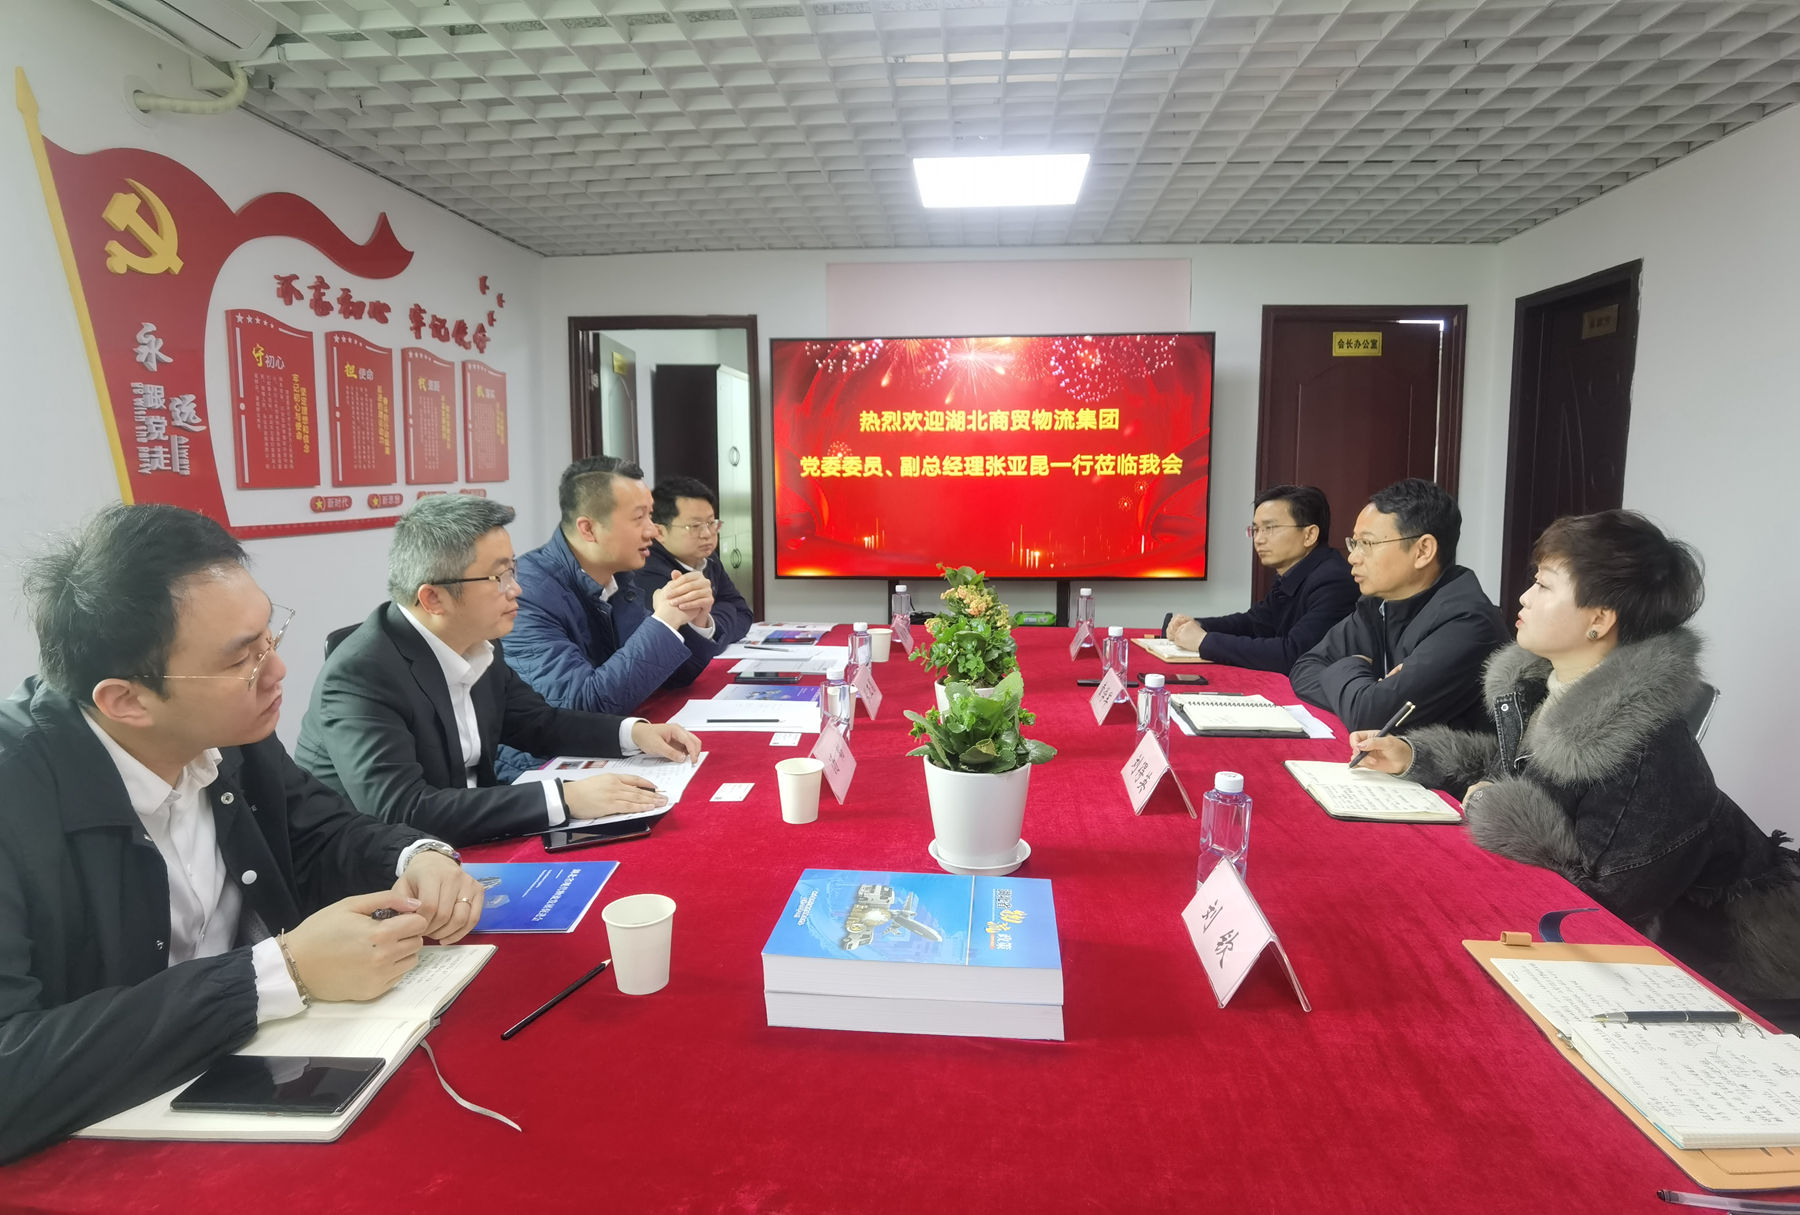 湖北商贸物流集团党委委员、副总经理张亚昆一行到访促进会